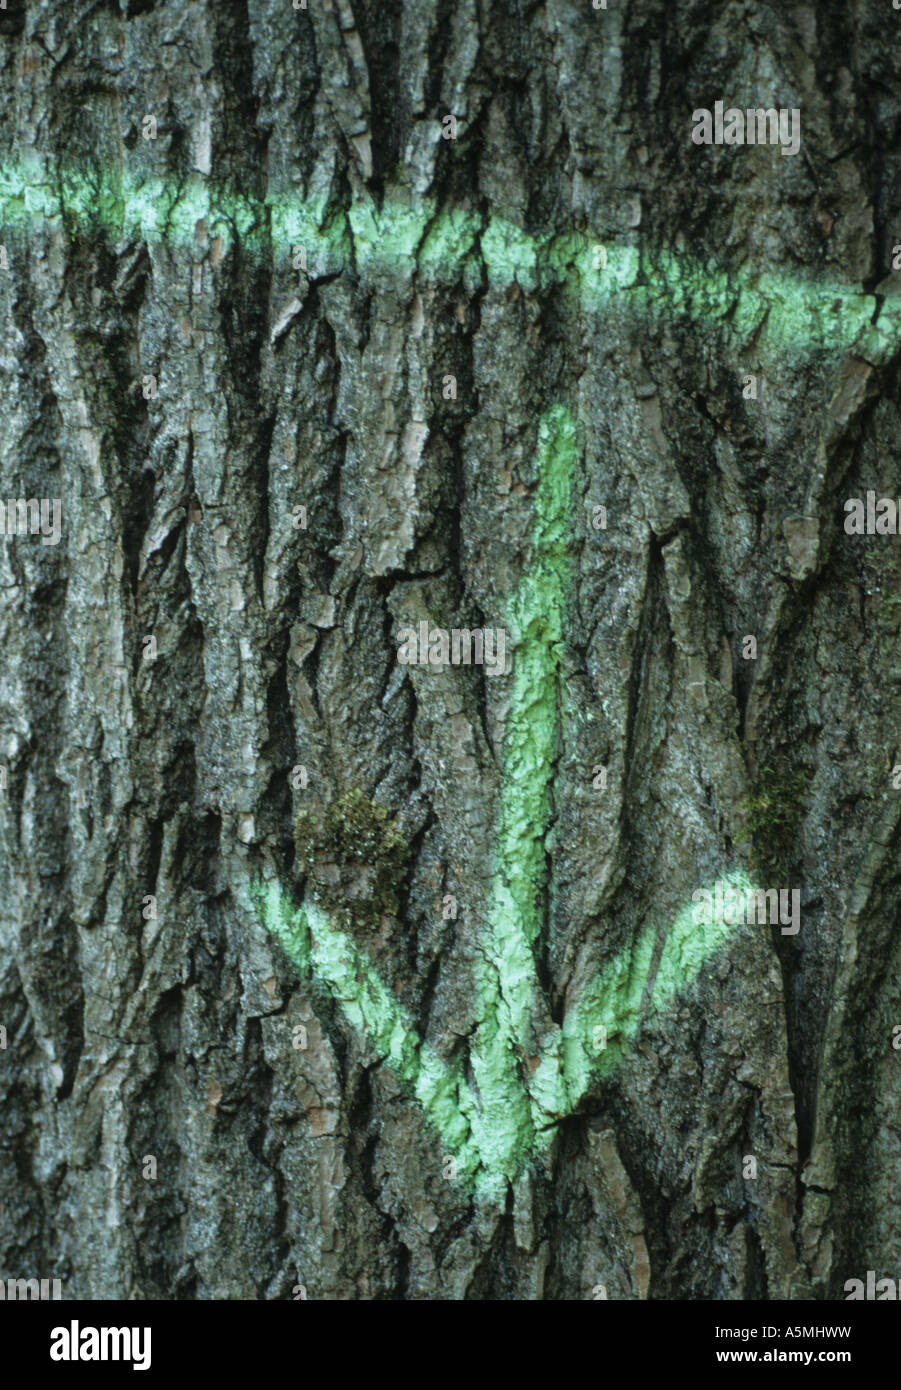 Grüner Pfeil Baumrinde Radium Zeigen Hinweisen Hinzeigen Wegweiser Wegweiser Zeichen zeigen den Weg Hinweiszeichen Hinweis Zeichen M Stockfoto